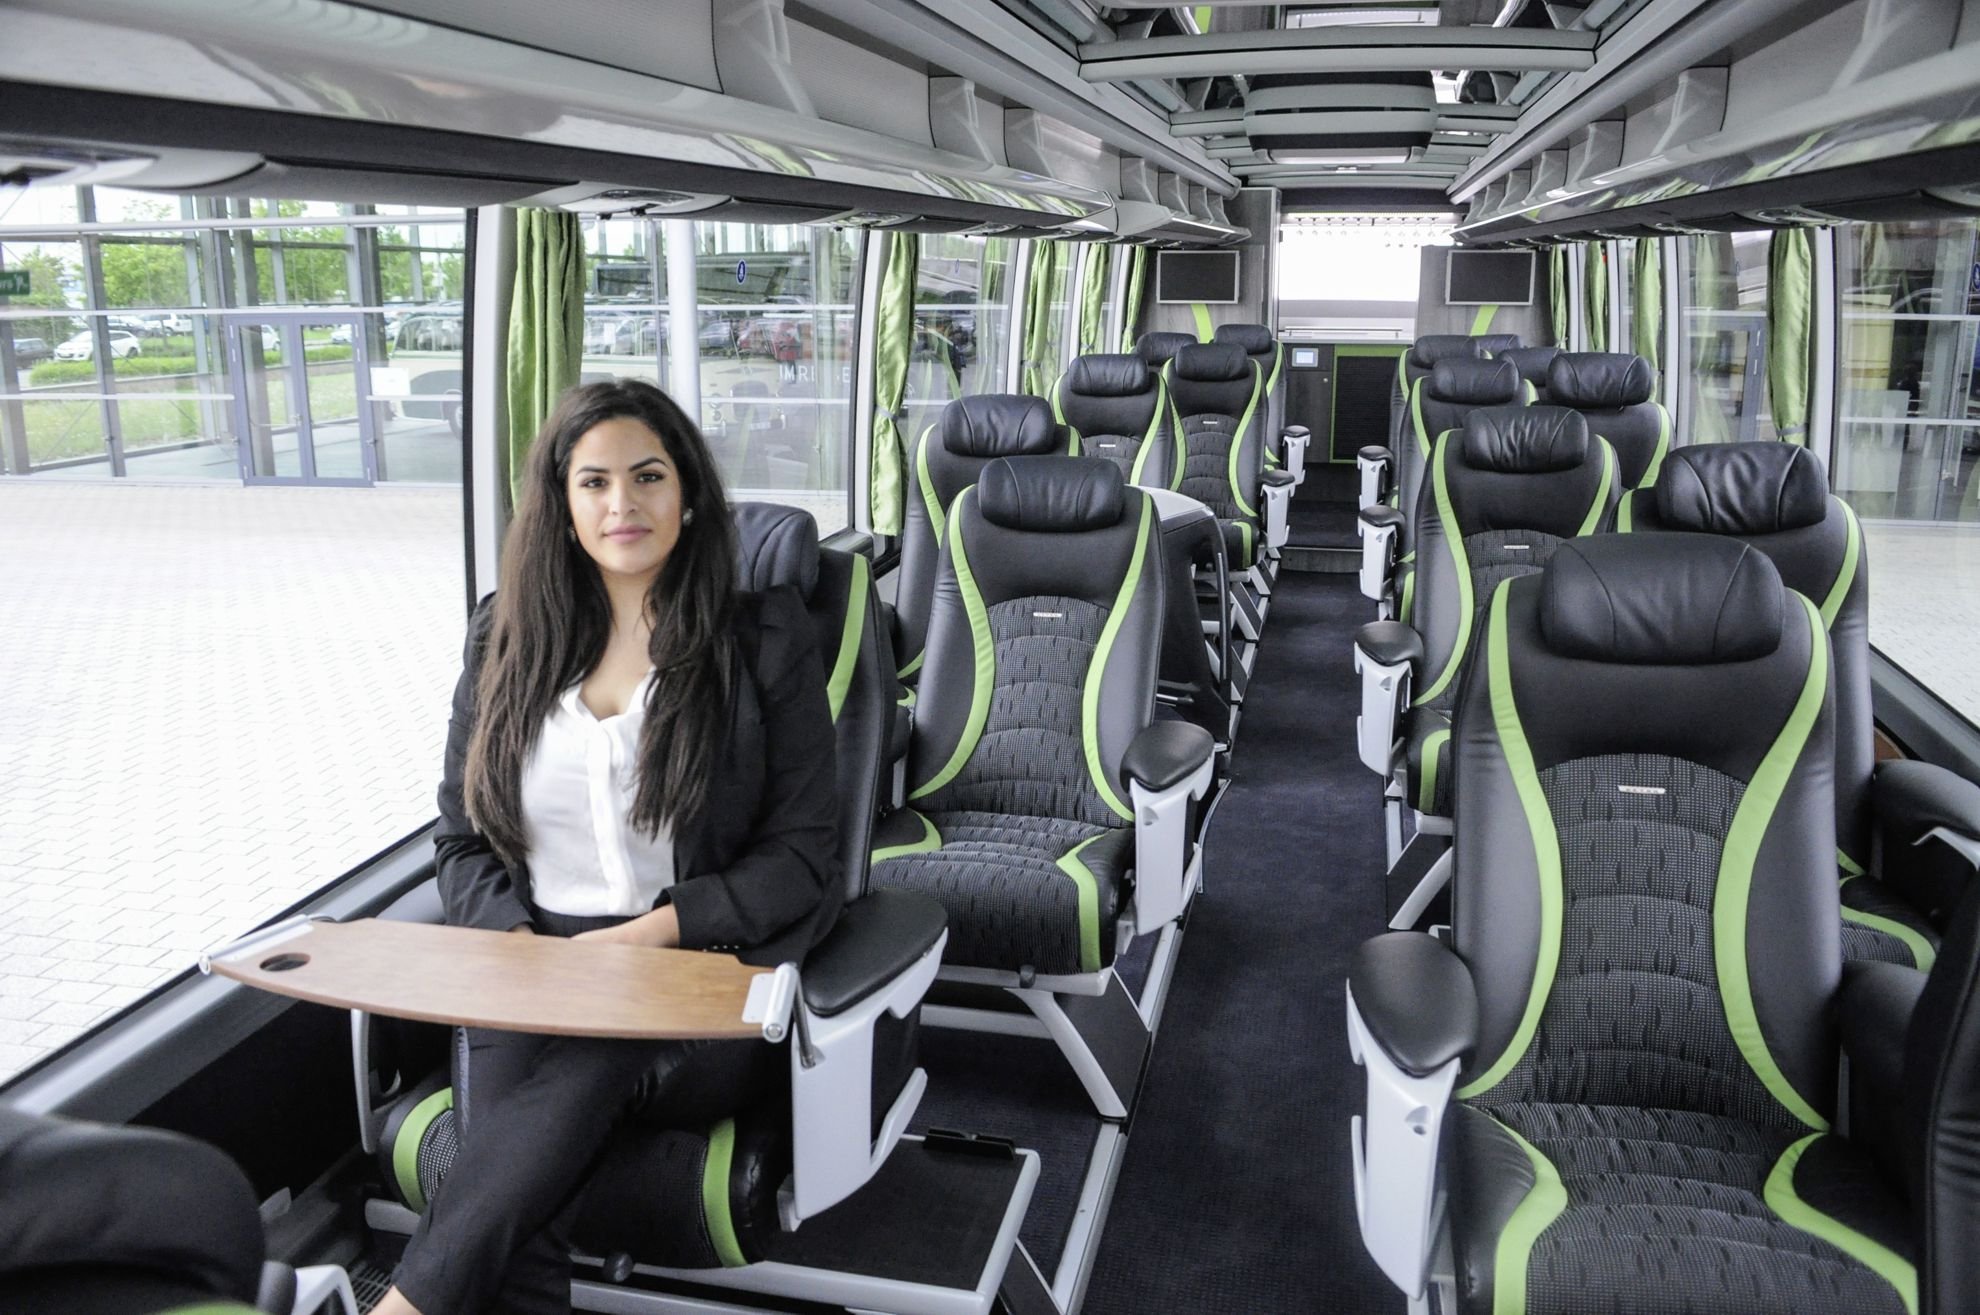 Салон общественного транспорта. Setra Comfort class 2022 салон. Кресла автобуса Setra s328. Mercedes-Benz Future Bus салон. Setra Comfort class New Generation.